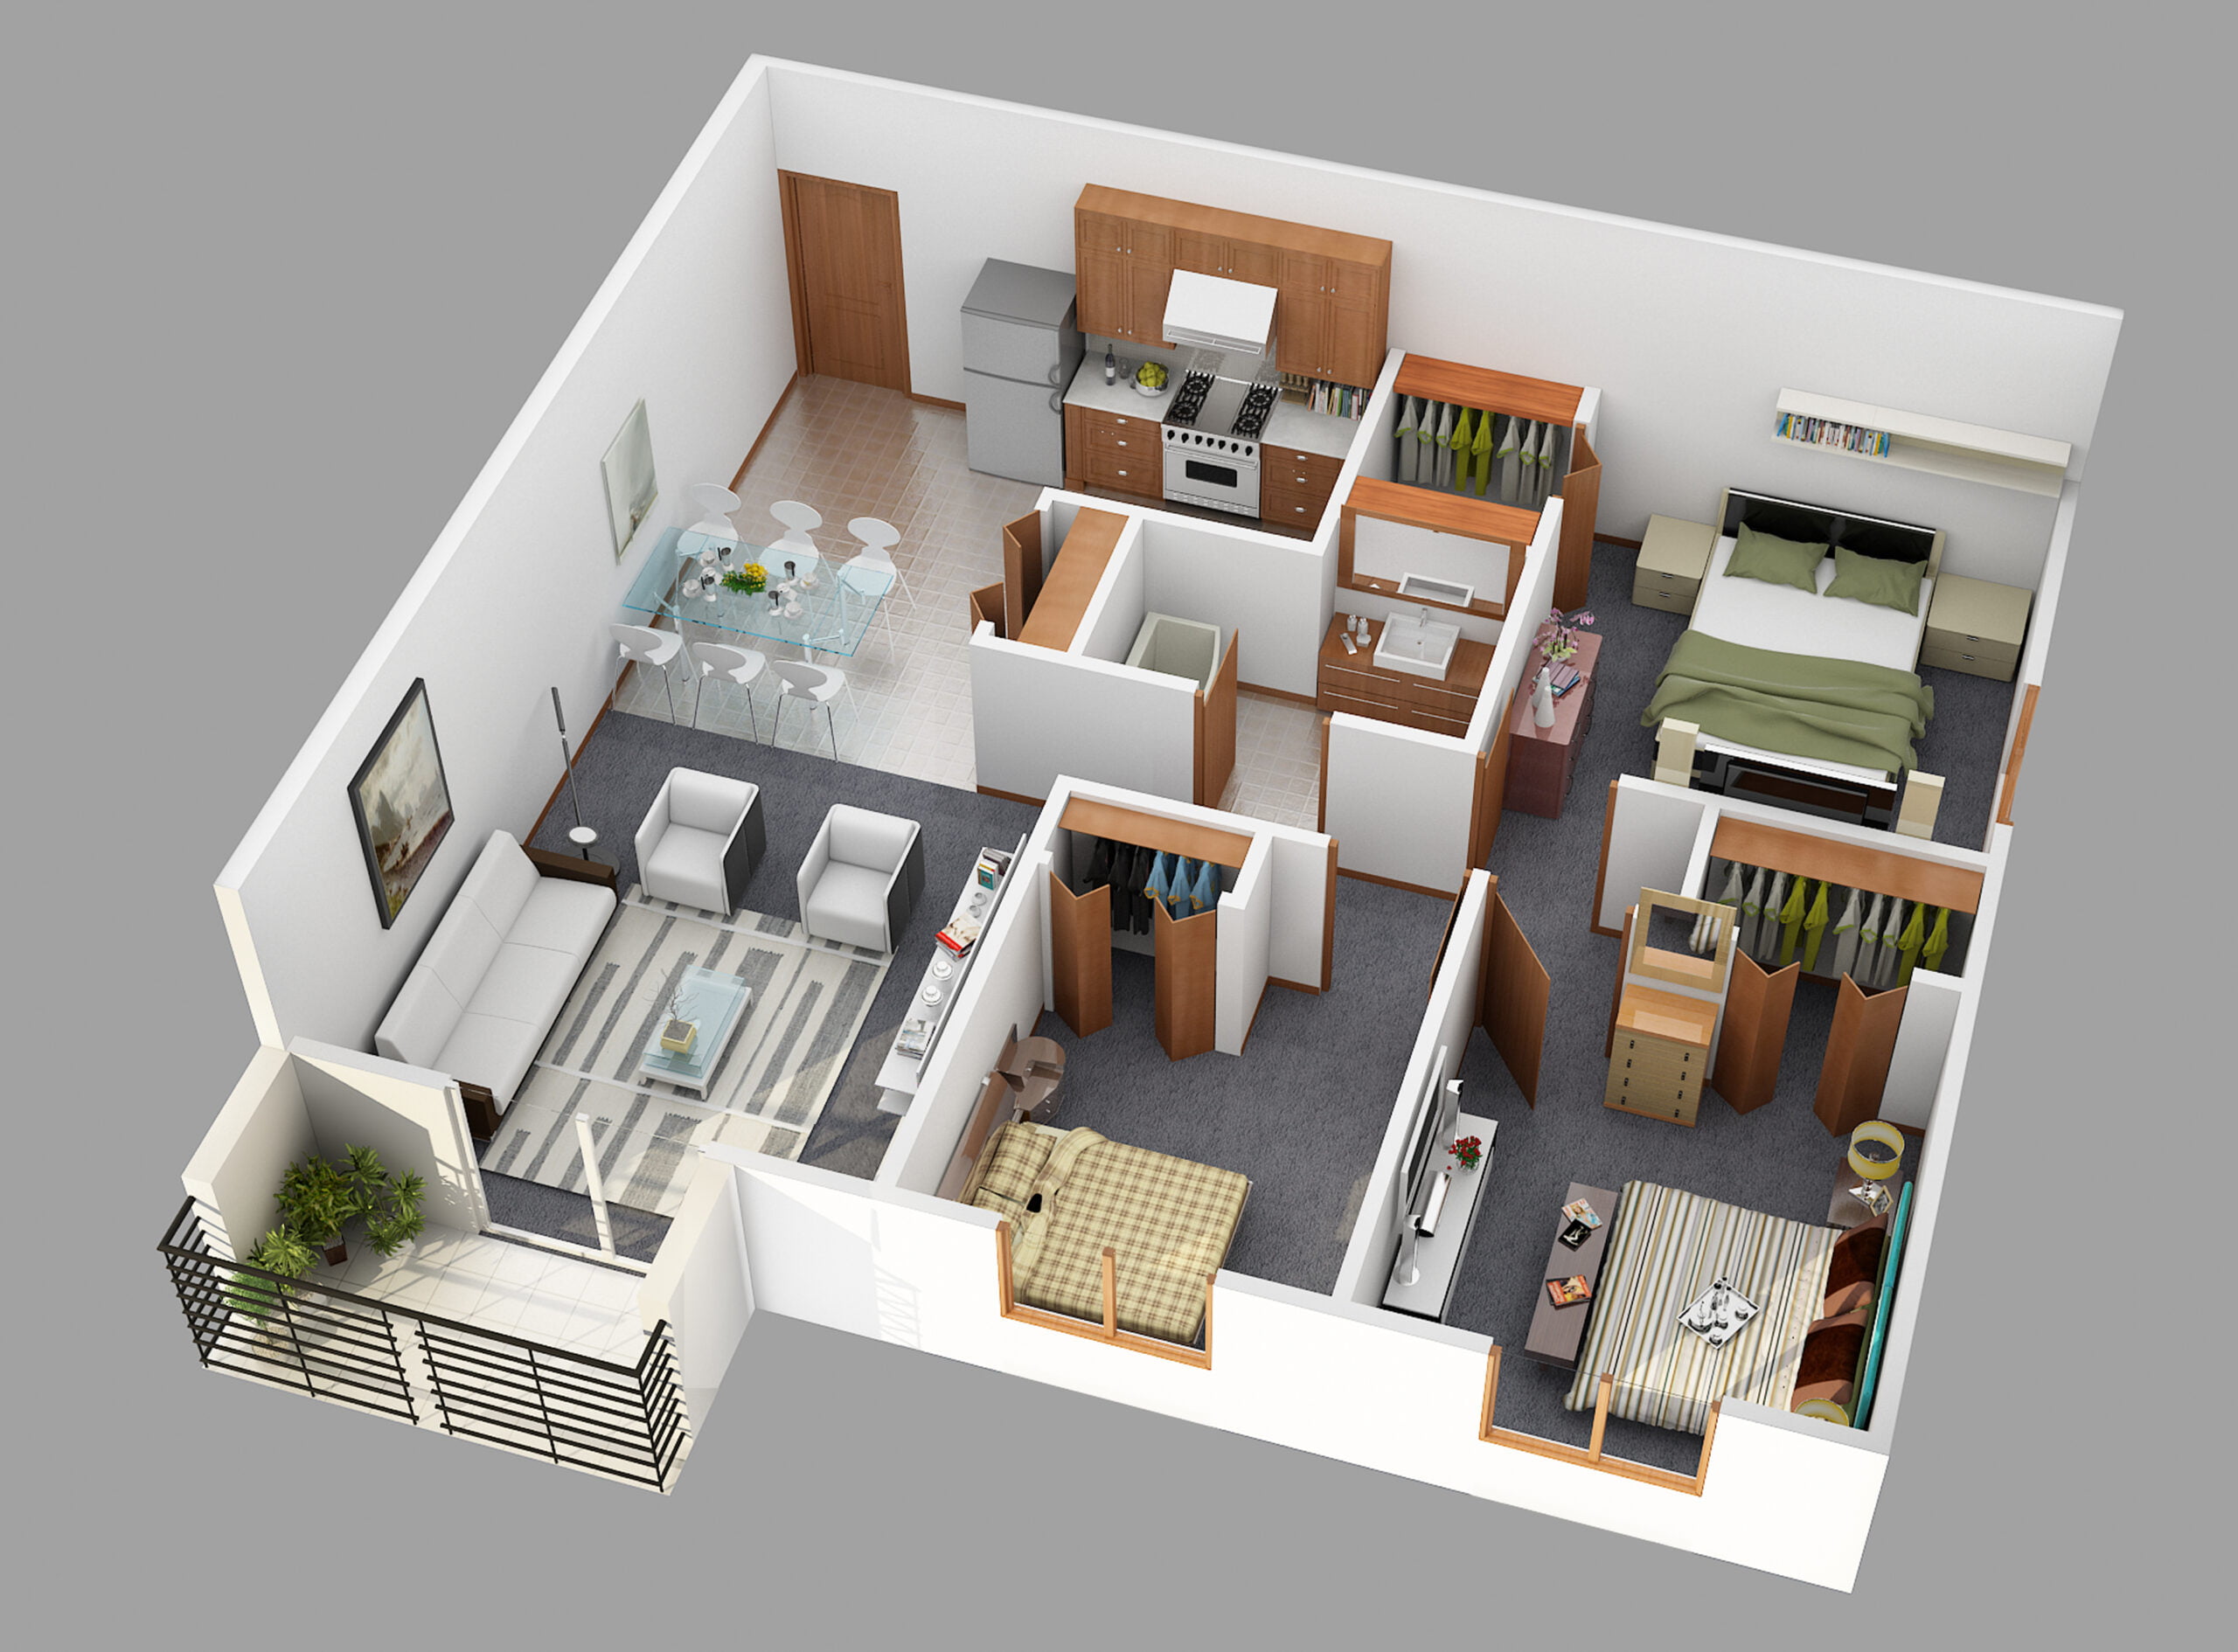 randare plan apartamente 4 camere, detalii, mobilier, decor design